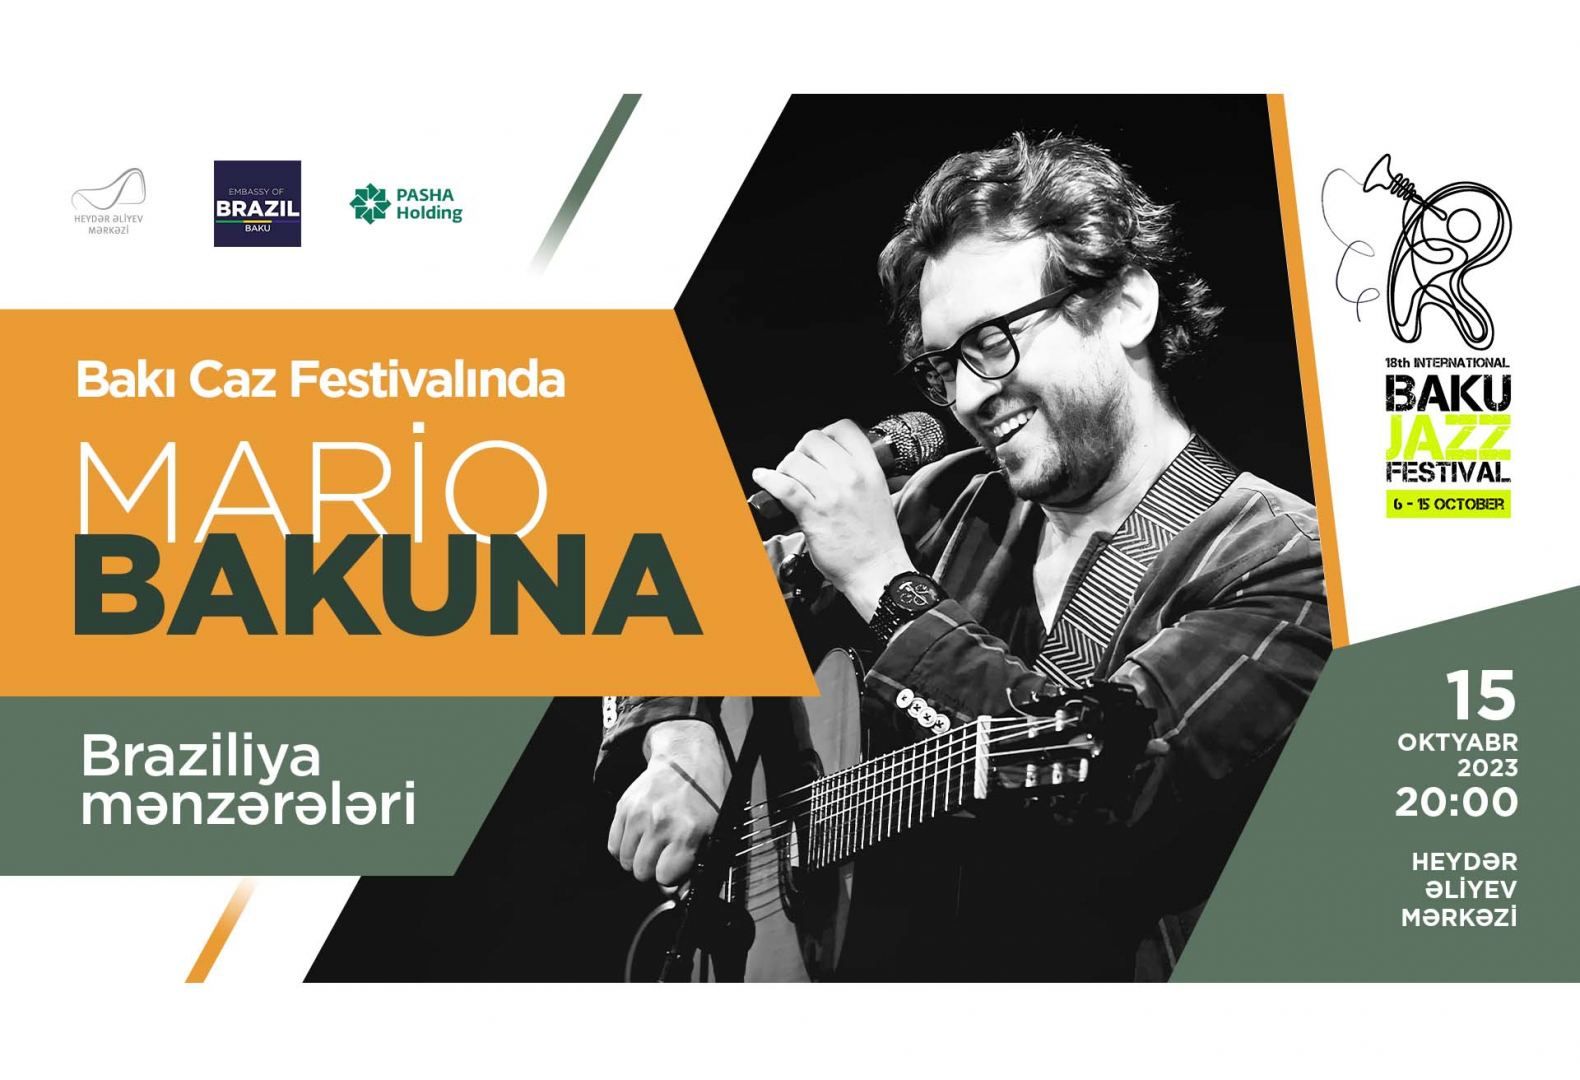 Brazilian musician to give concert in Baku